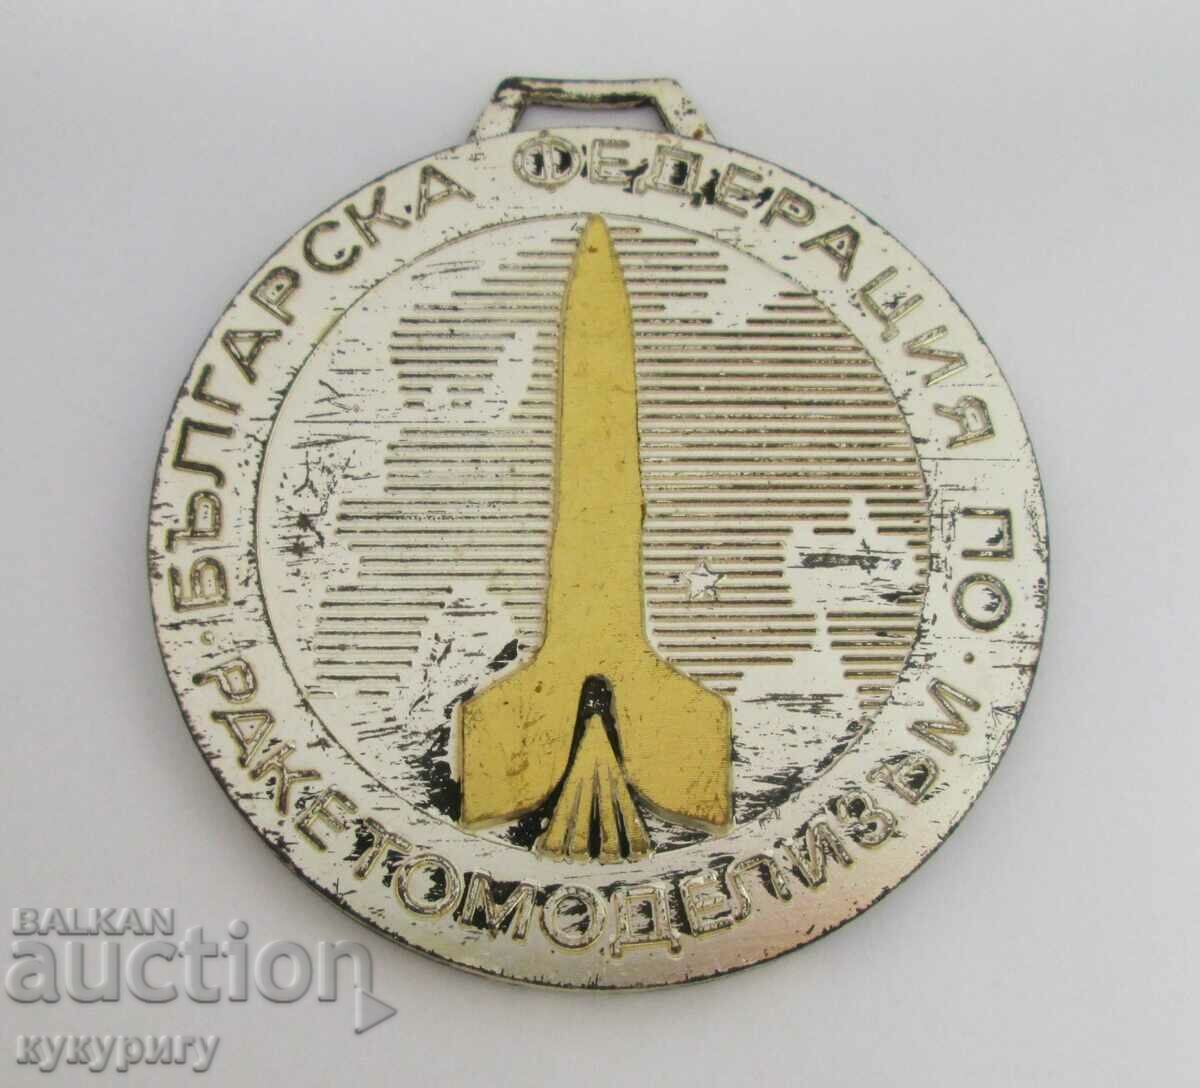 Стар медал Българска Федерация по Ракетомоделизъм